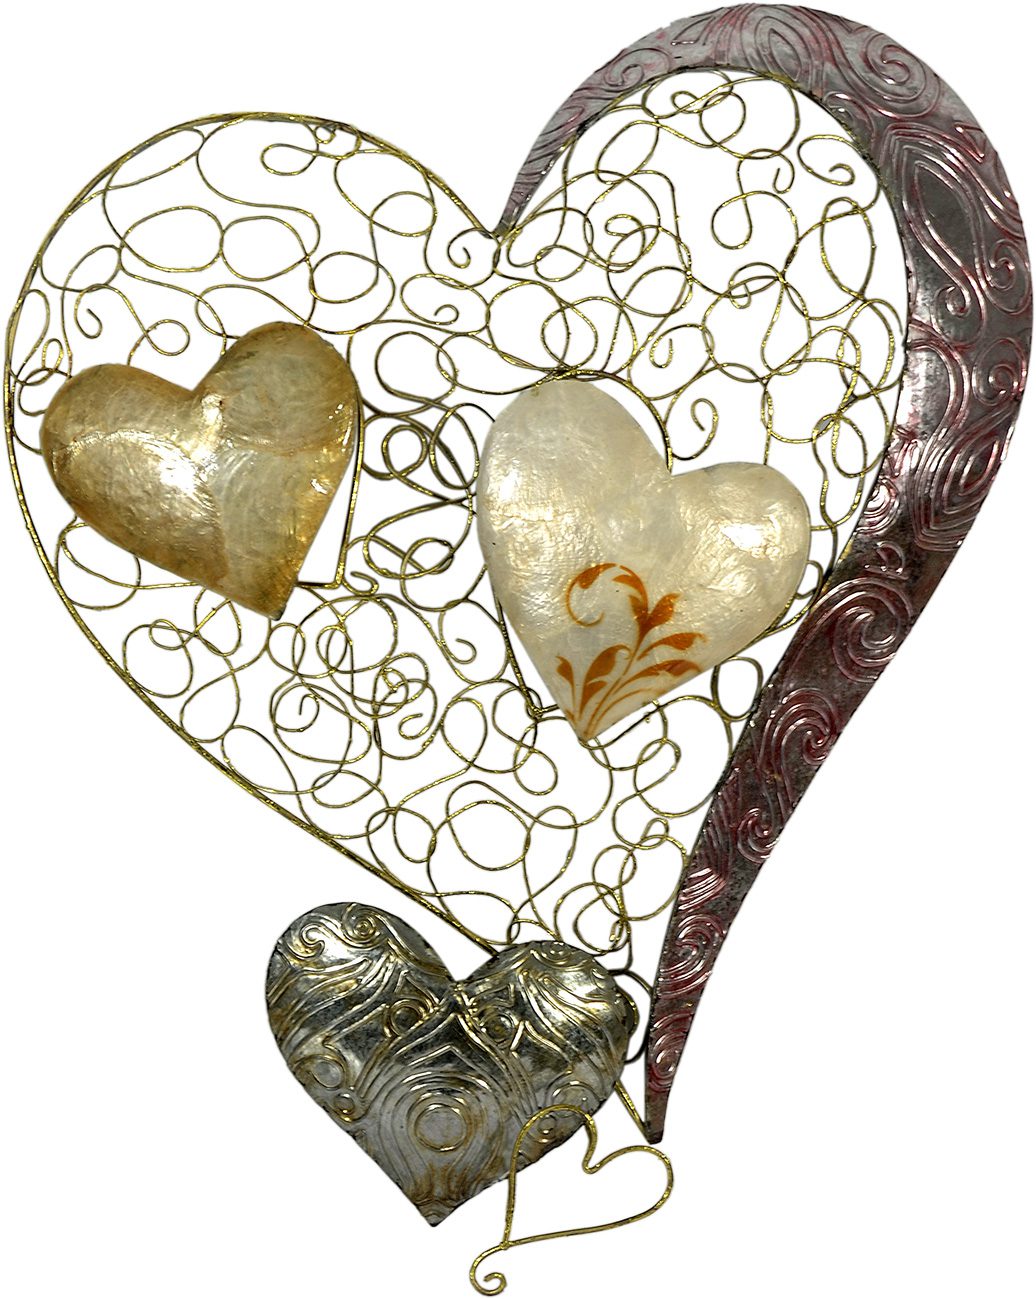 "Hart voor hart" koop @ Betaalbarekunst.nl. Speels en vrolijk metalen voor aan de muur.